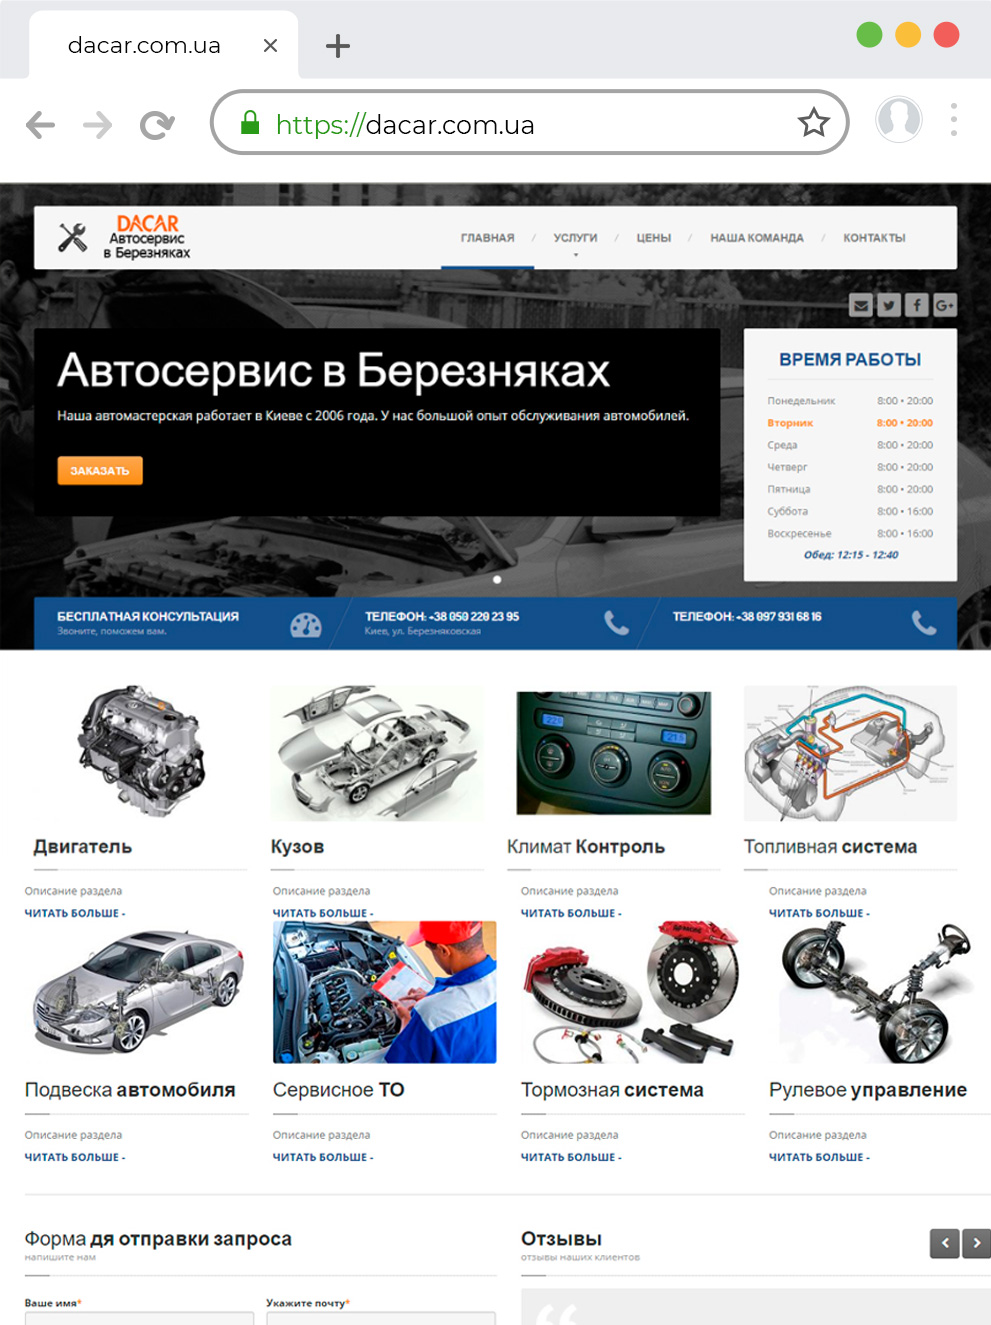 Разработка сайта автосервиса на Wordpress dacar.kiev.ua